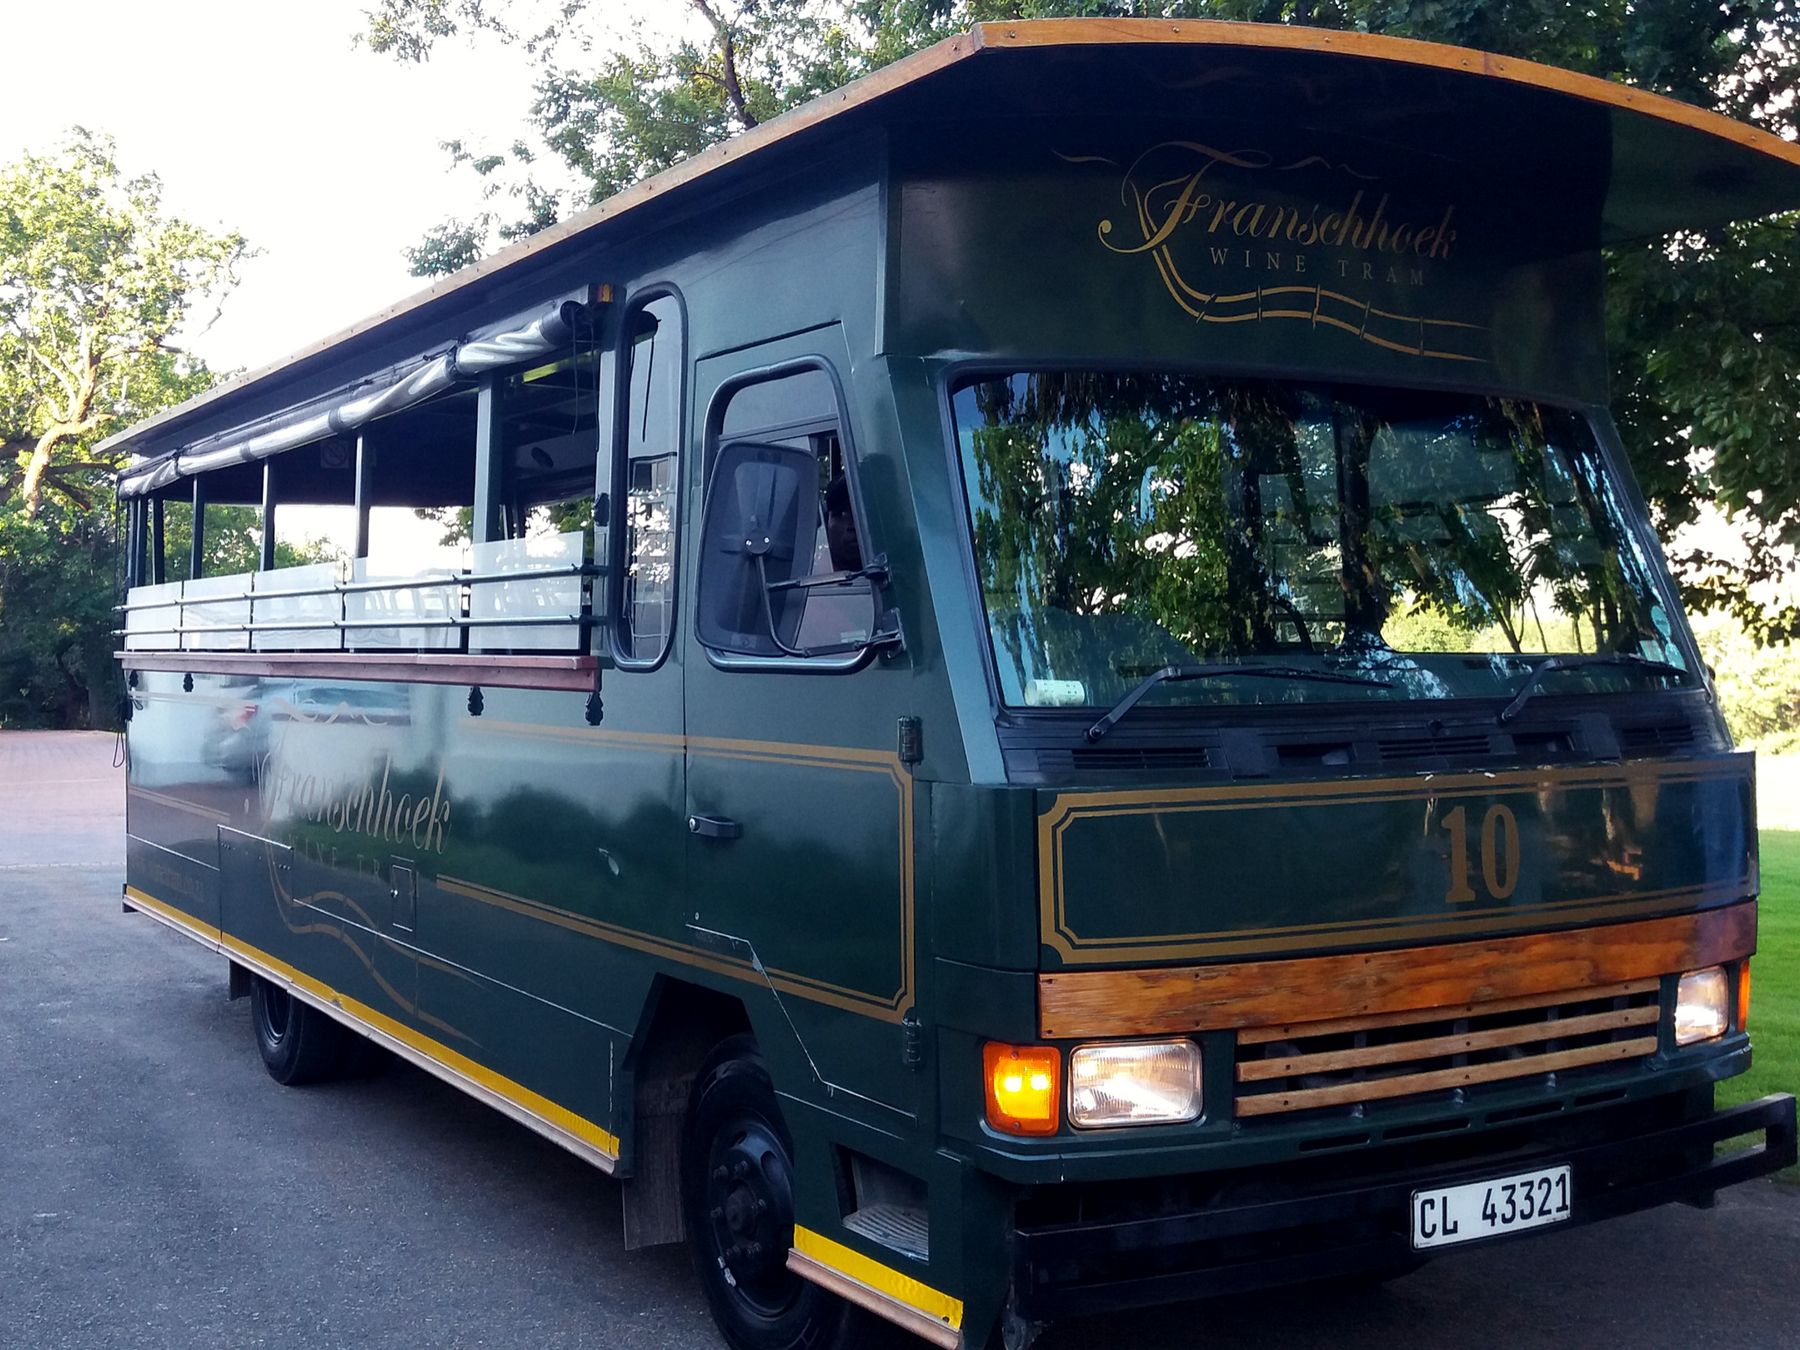 Rota-dos-vinhos-em-Cape-Town-Stellenbosch-e-Franschhoek-wine-tram Rota dos vinhos em Cape Town Stellenbosch e Franschhoek  